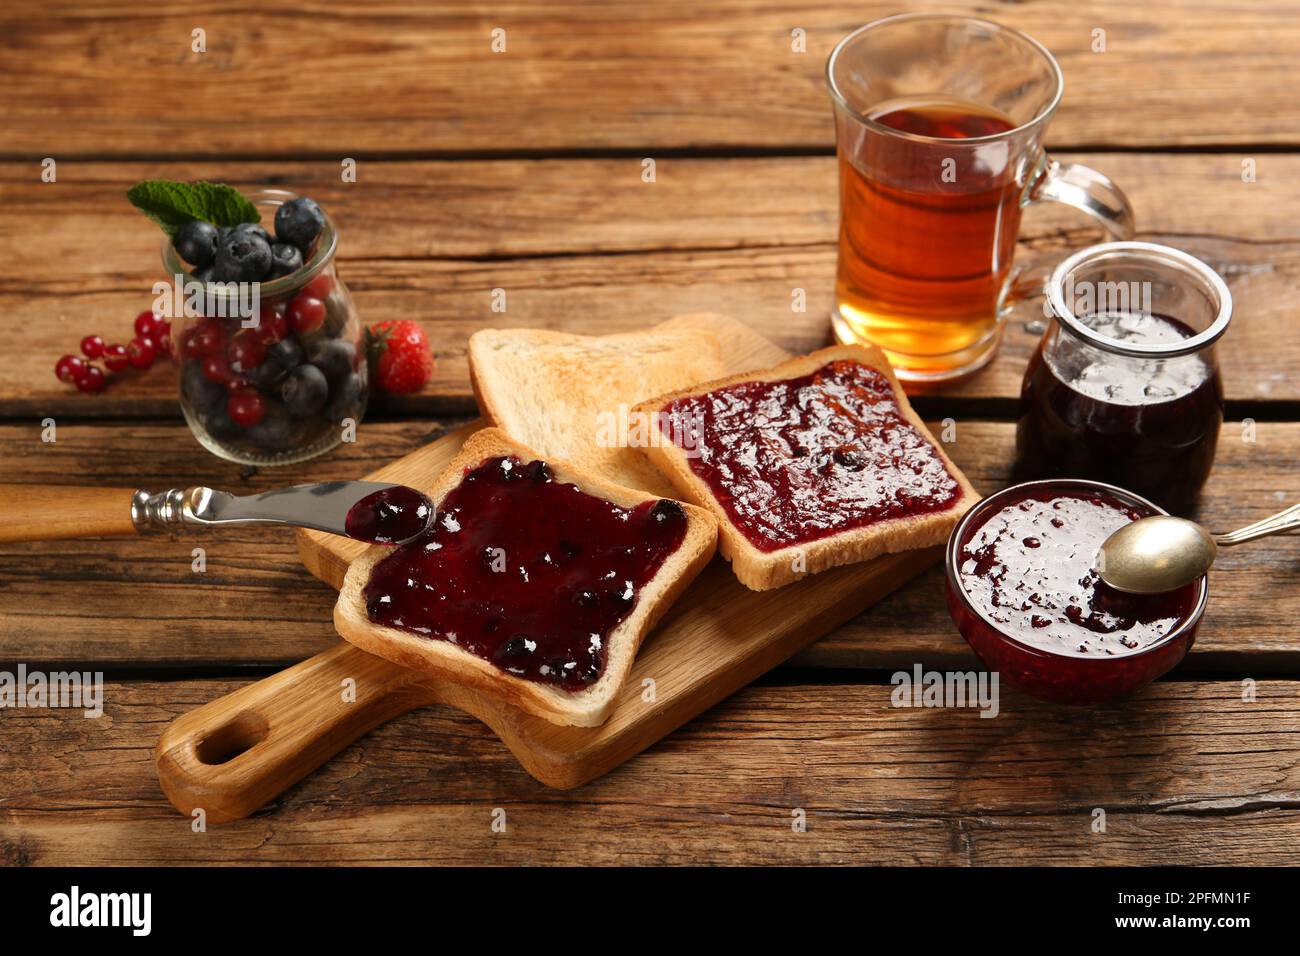 Köstliche Toasts mit verschiedenen Marmeladen, Tee und Beeren auf einem Holztisch Stockfoto